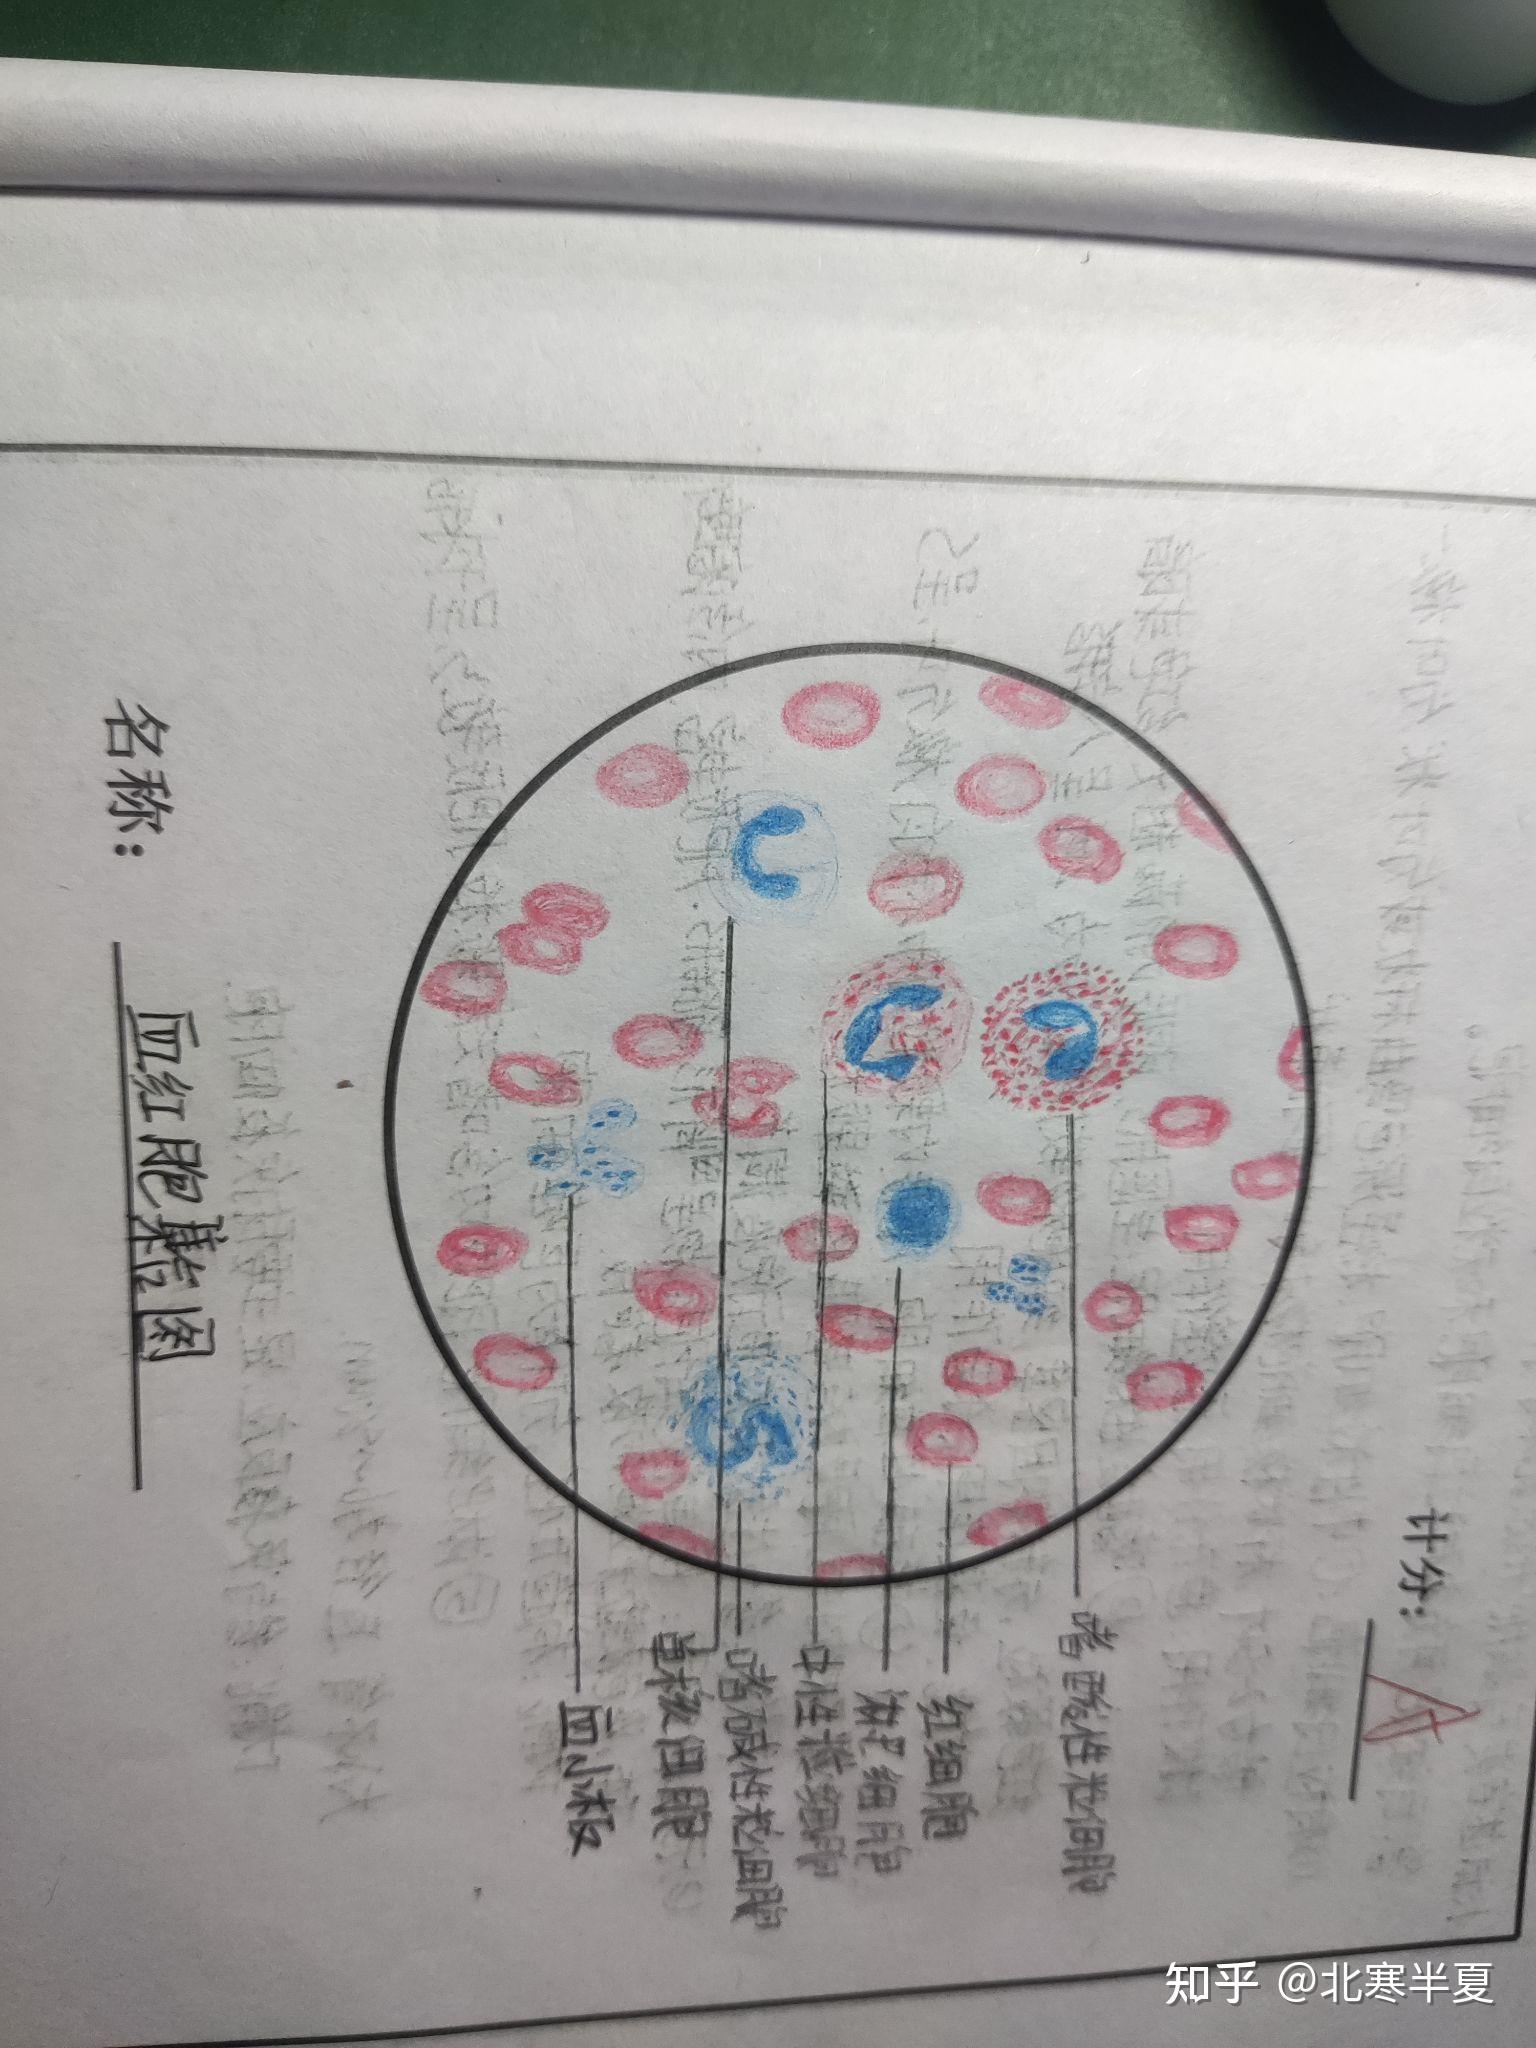 血细胞绘画图图片